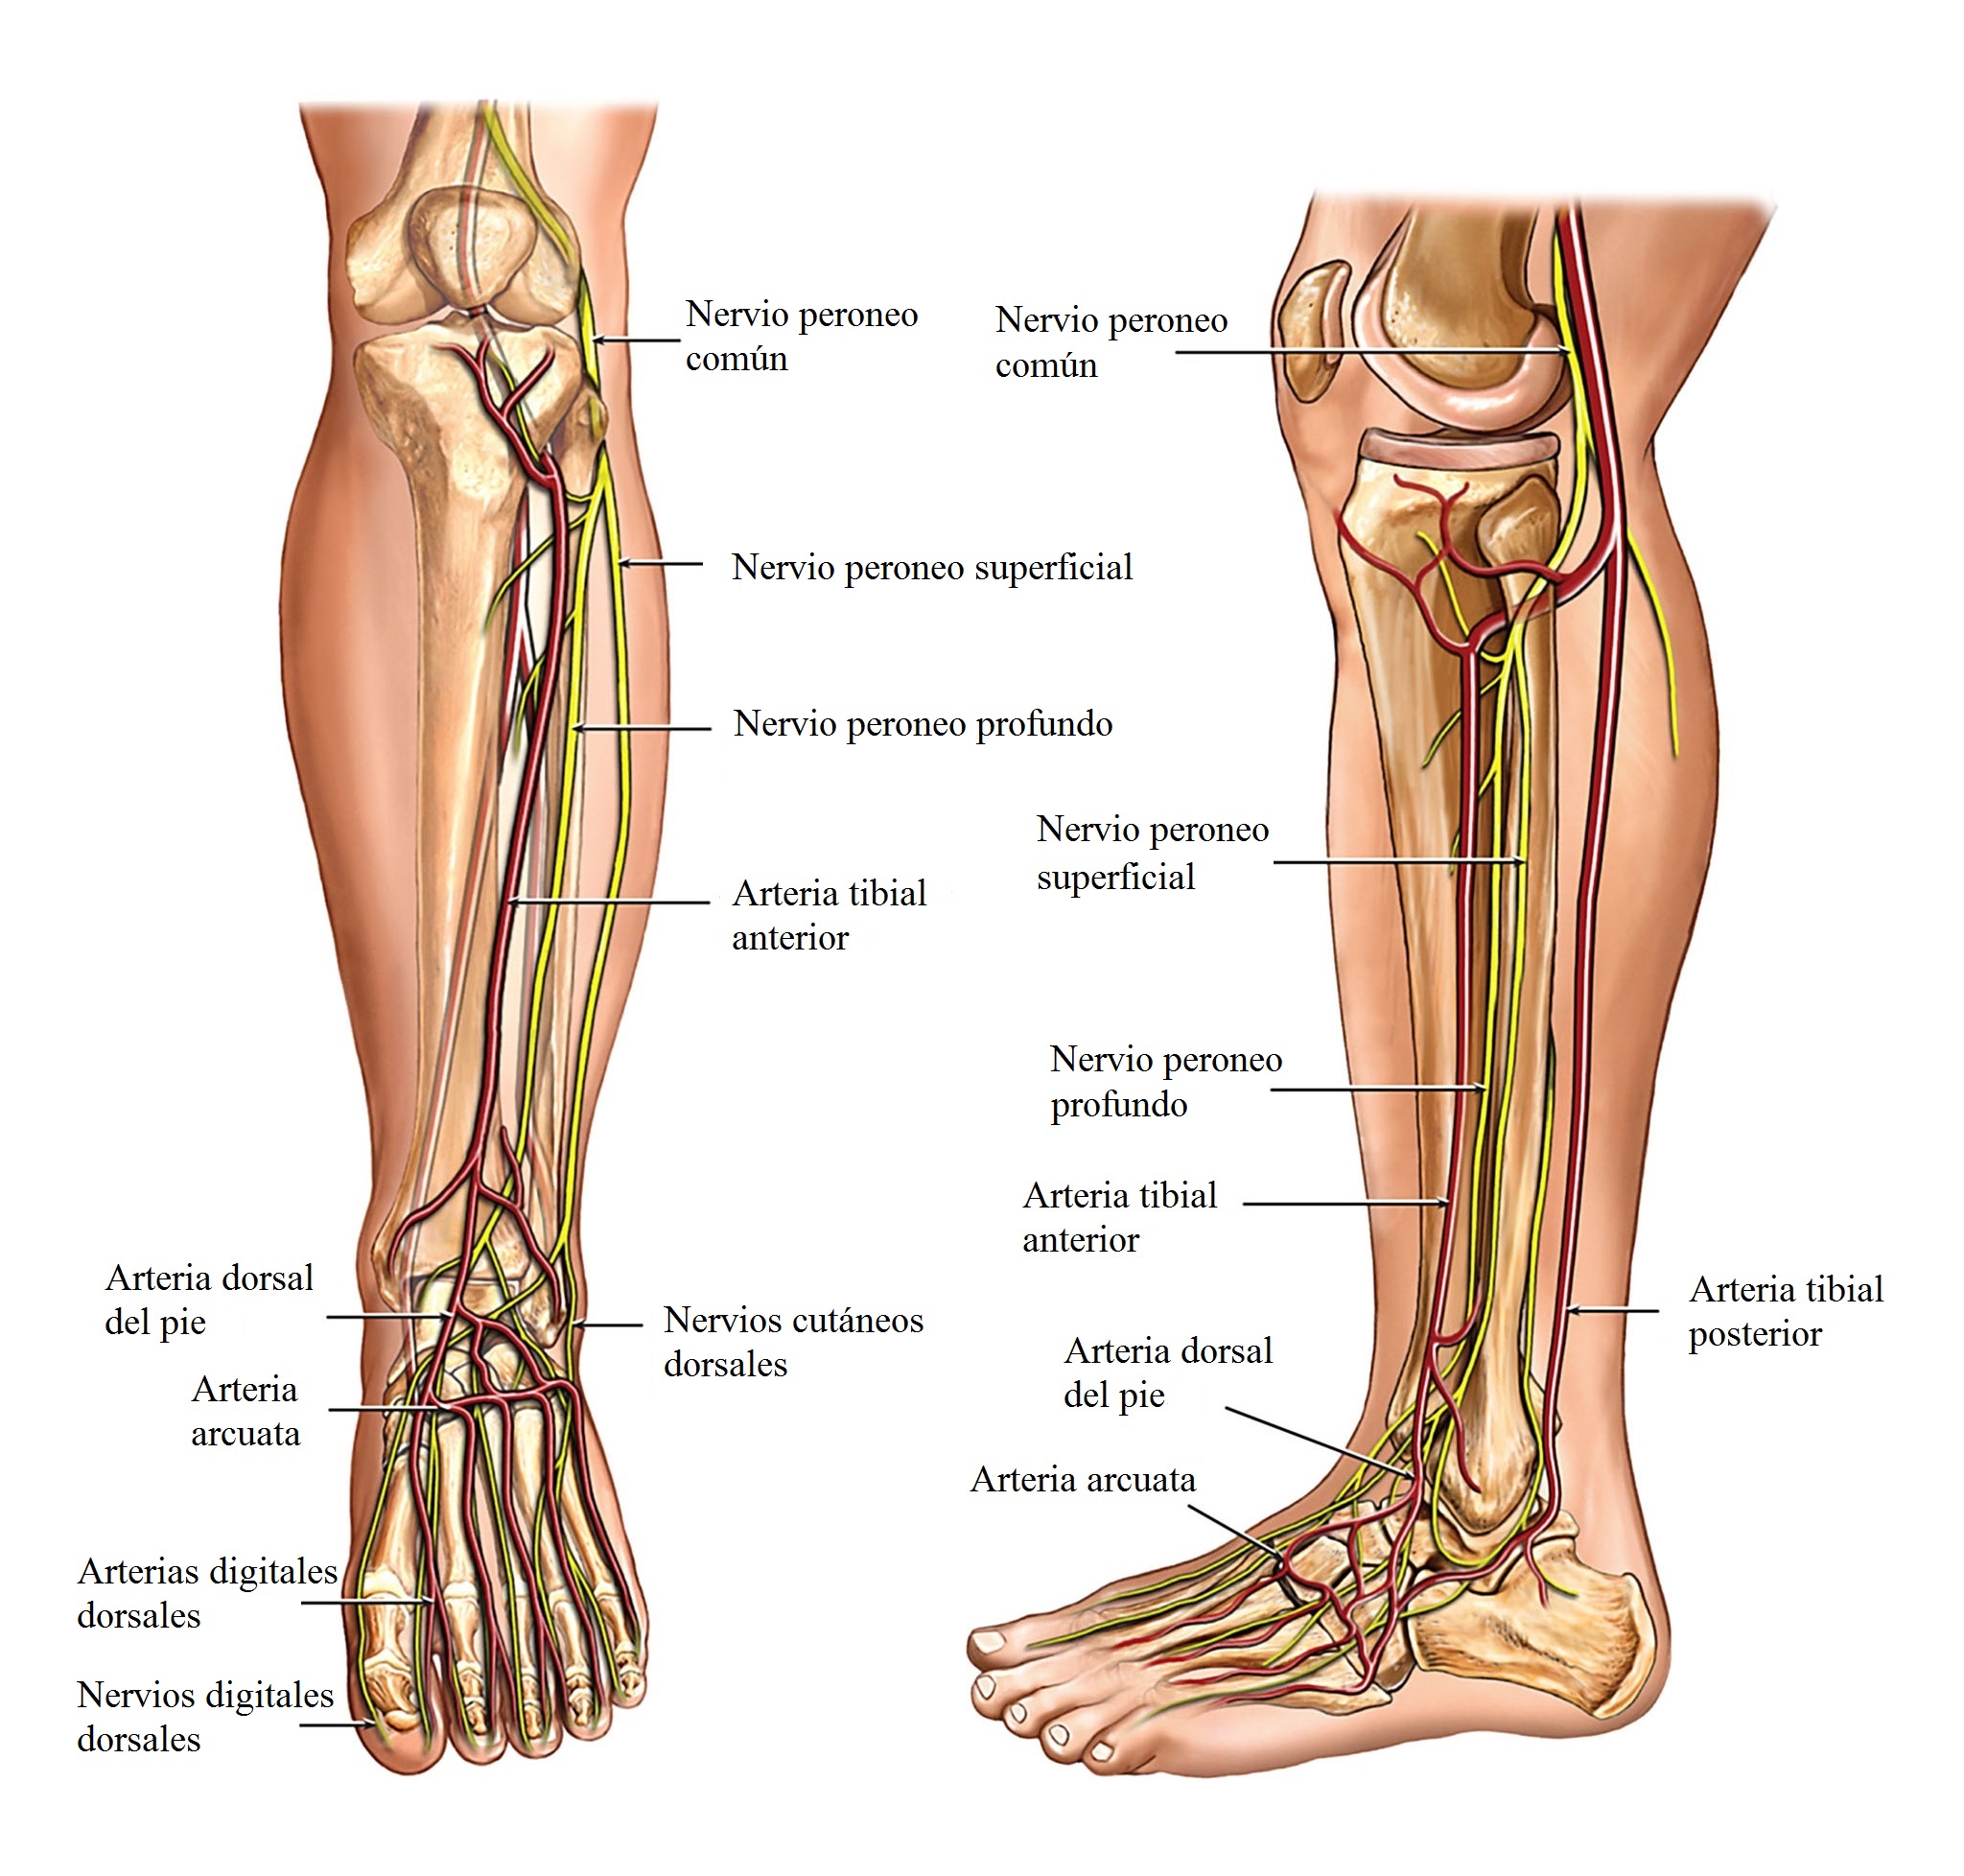 Anatomía de la pierna, nervios y arterias